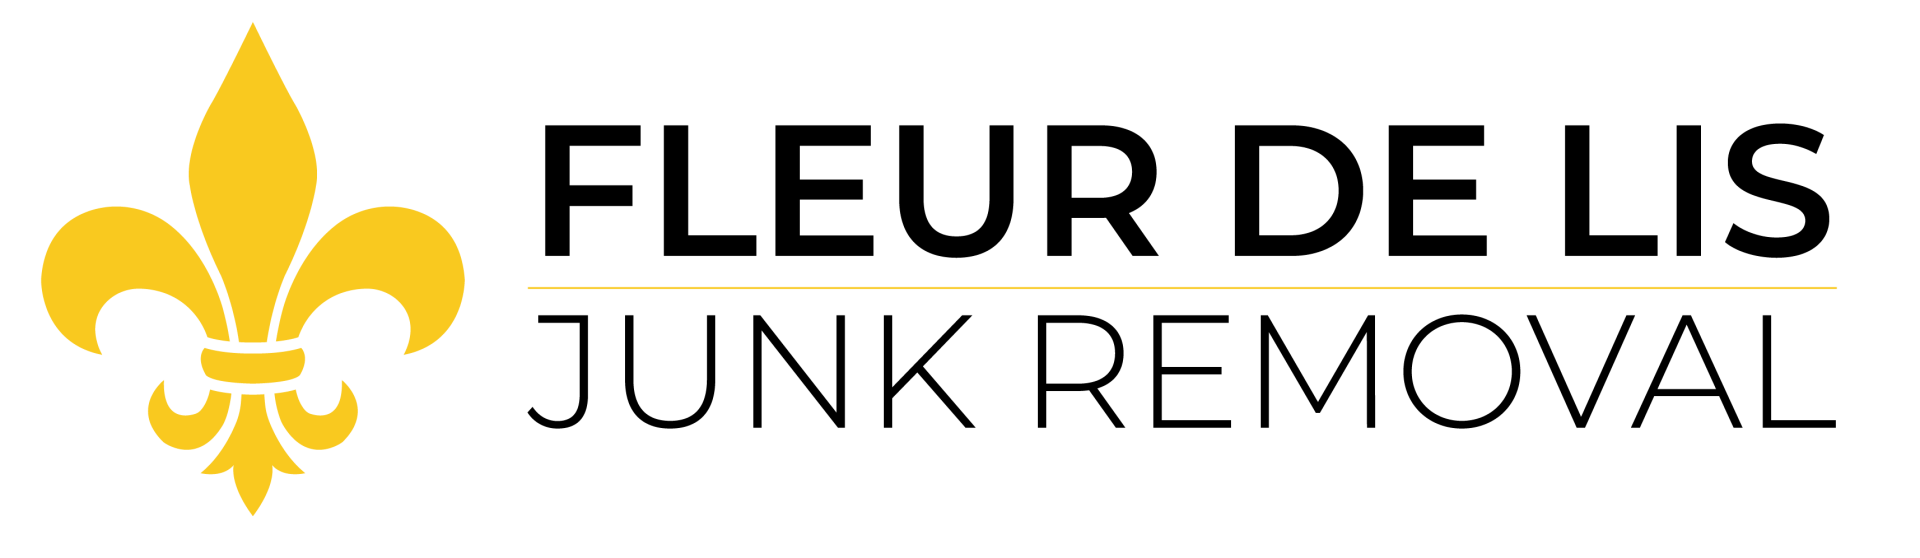 Fleur de Lis Junk Removal Logo. Located in North Idaho and Spokane areas.